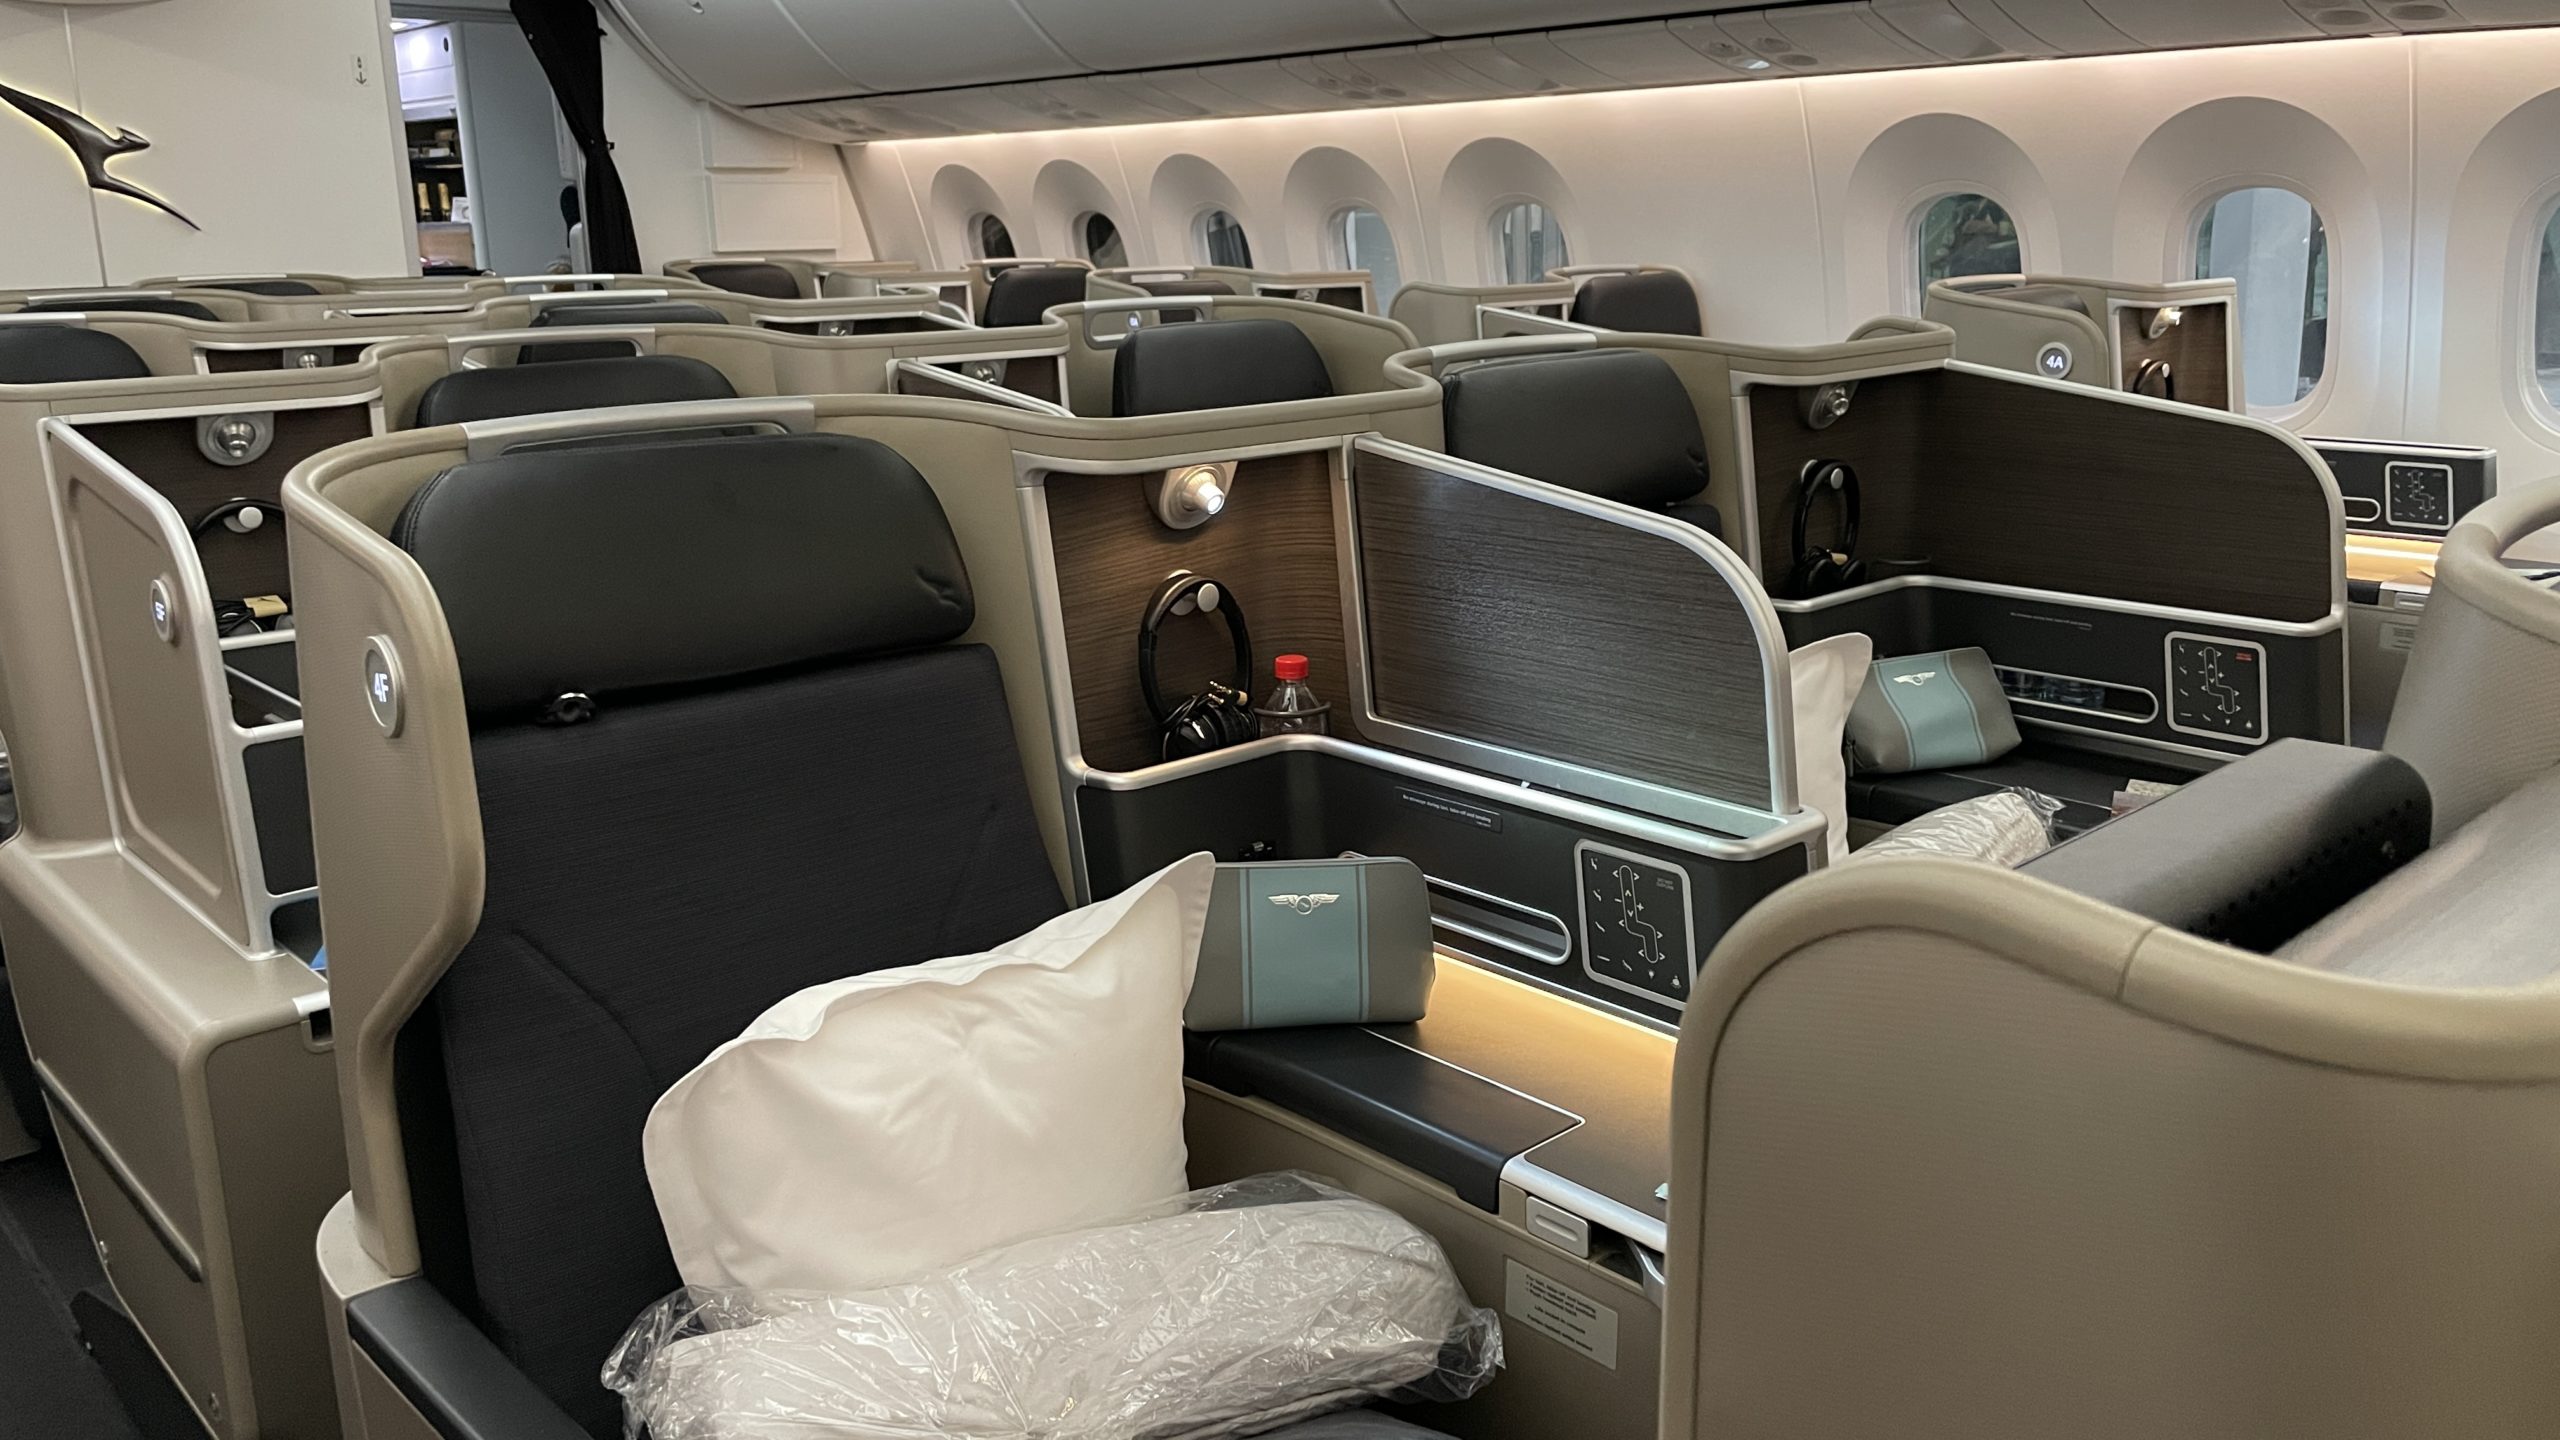 Qantas 787 Dreamliner Business Suite Cabin Pillow Duvet Point Hacks by Daniel Sciberras